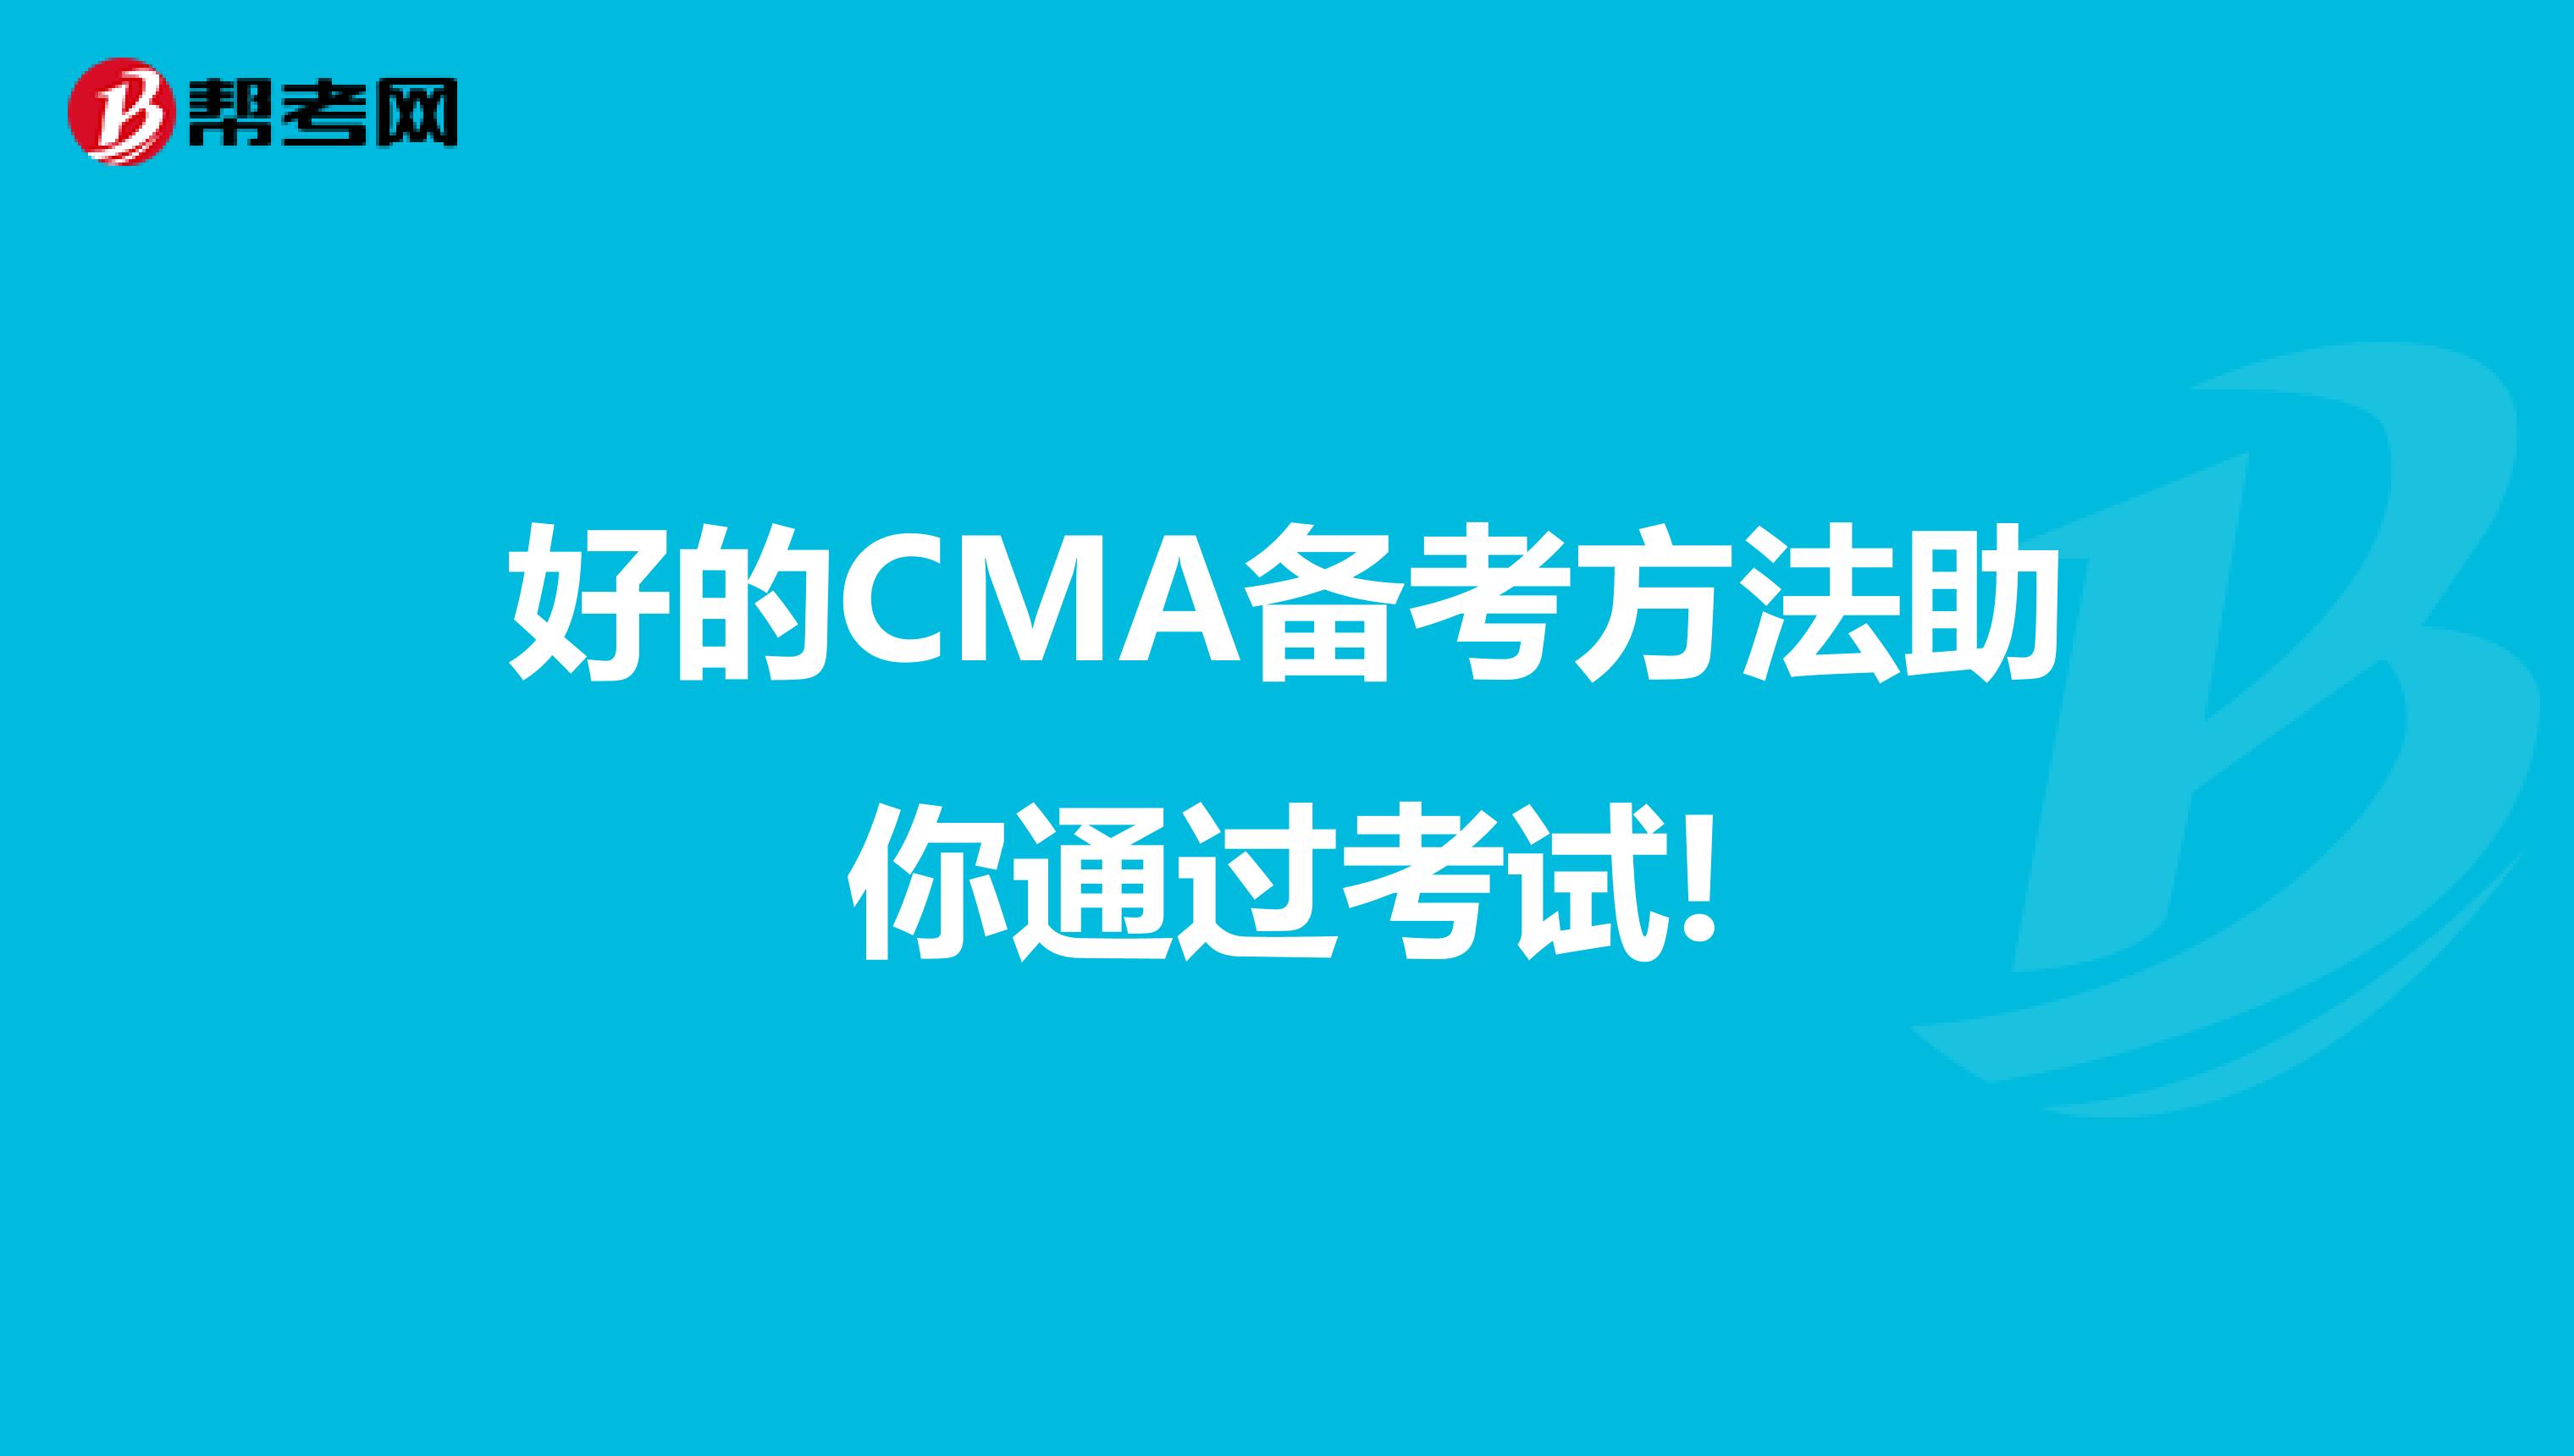 拥有一个好的CMA备考方法可以助你通过考试!